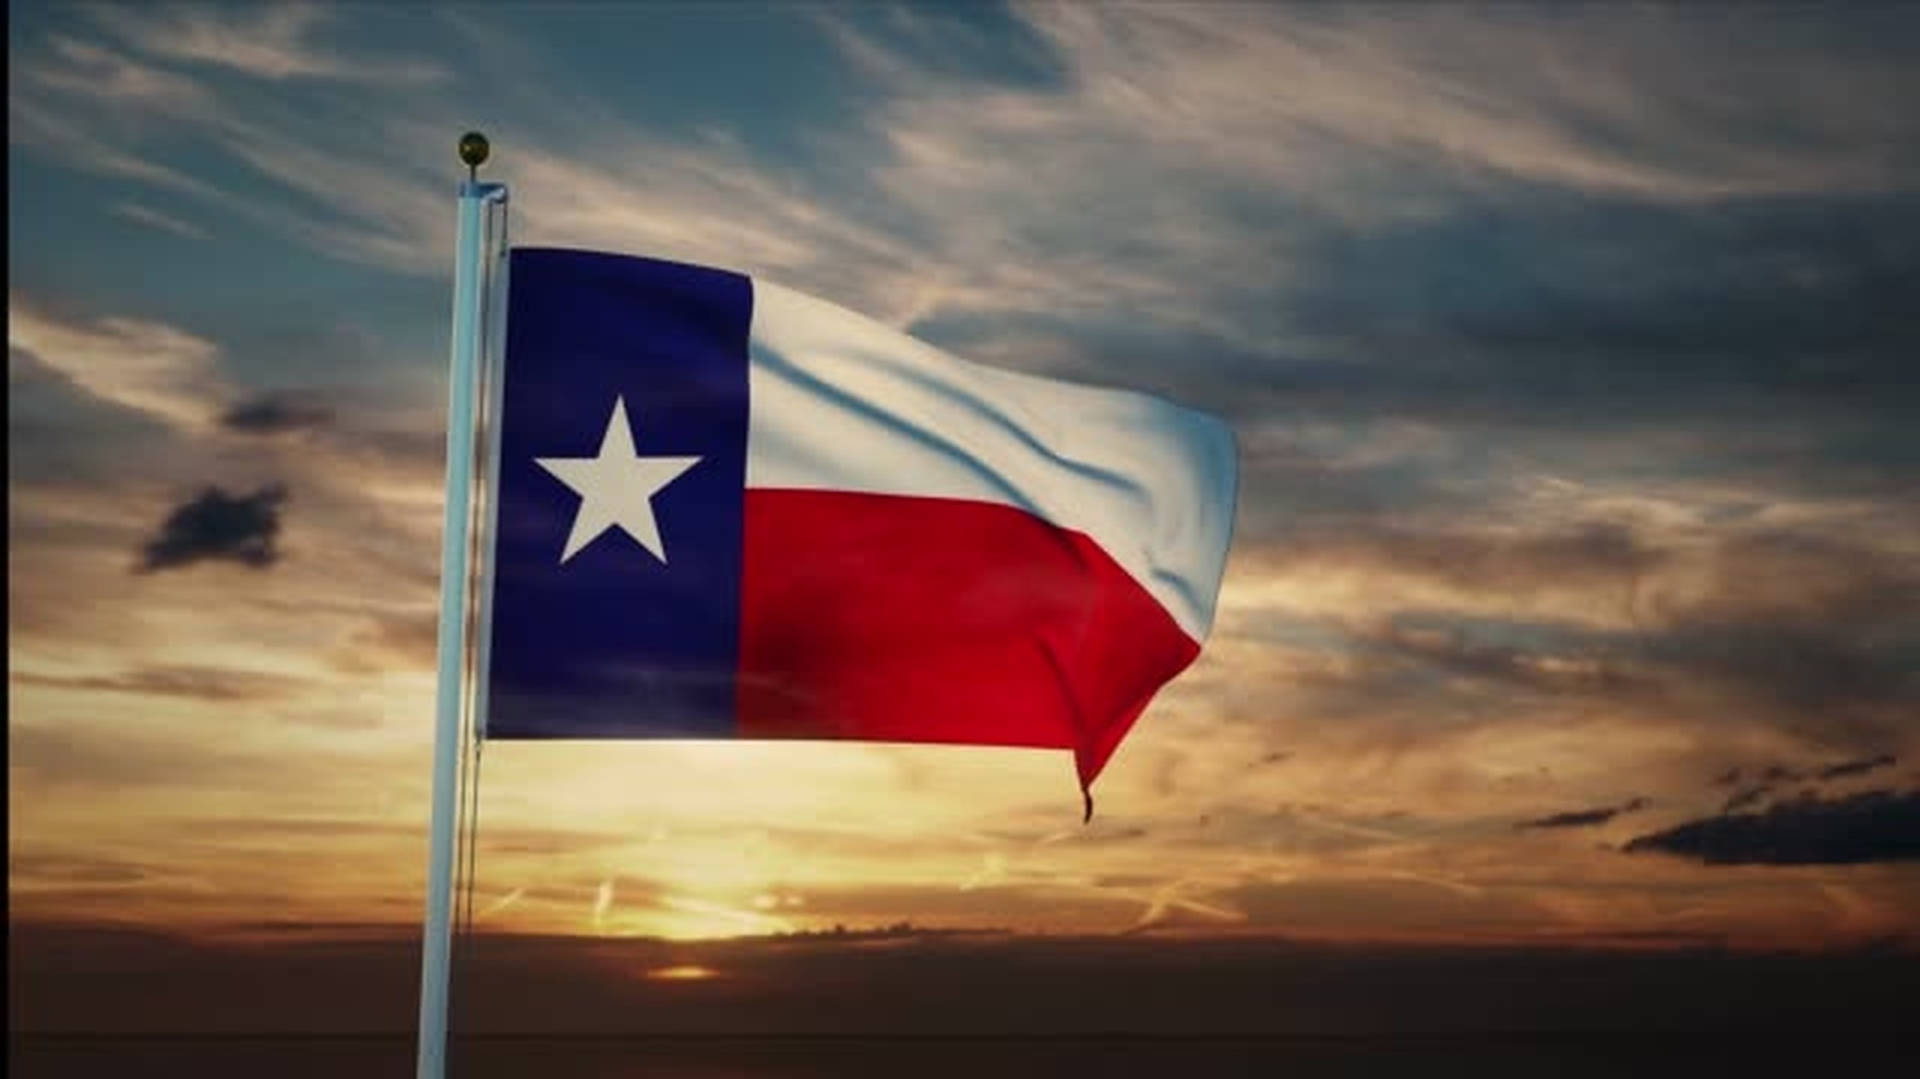 Mesmerizing Texas Flag Background